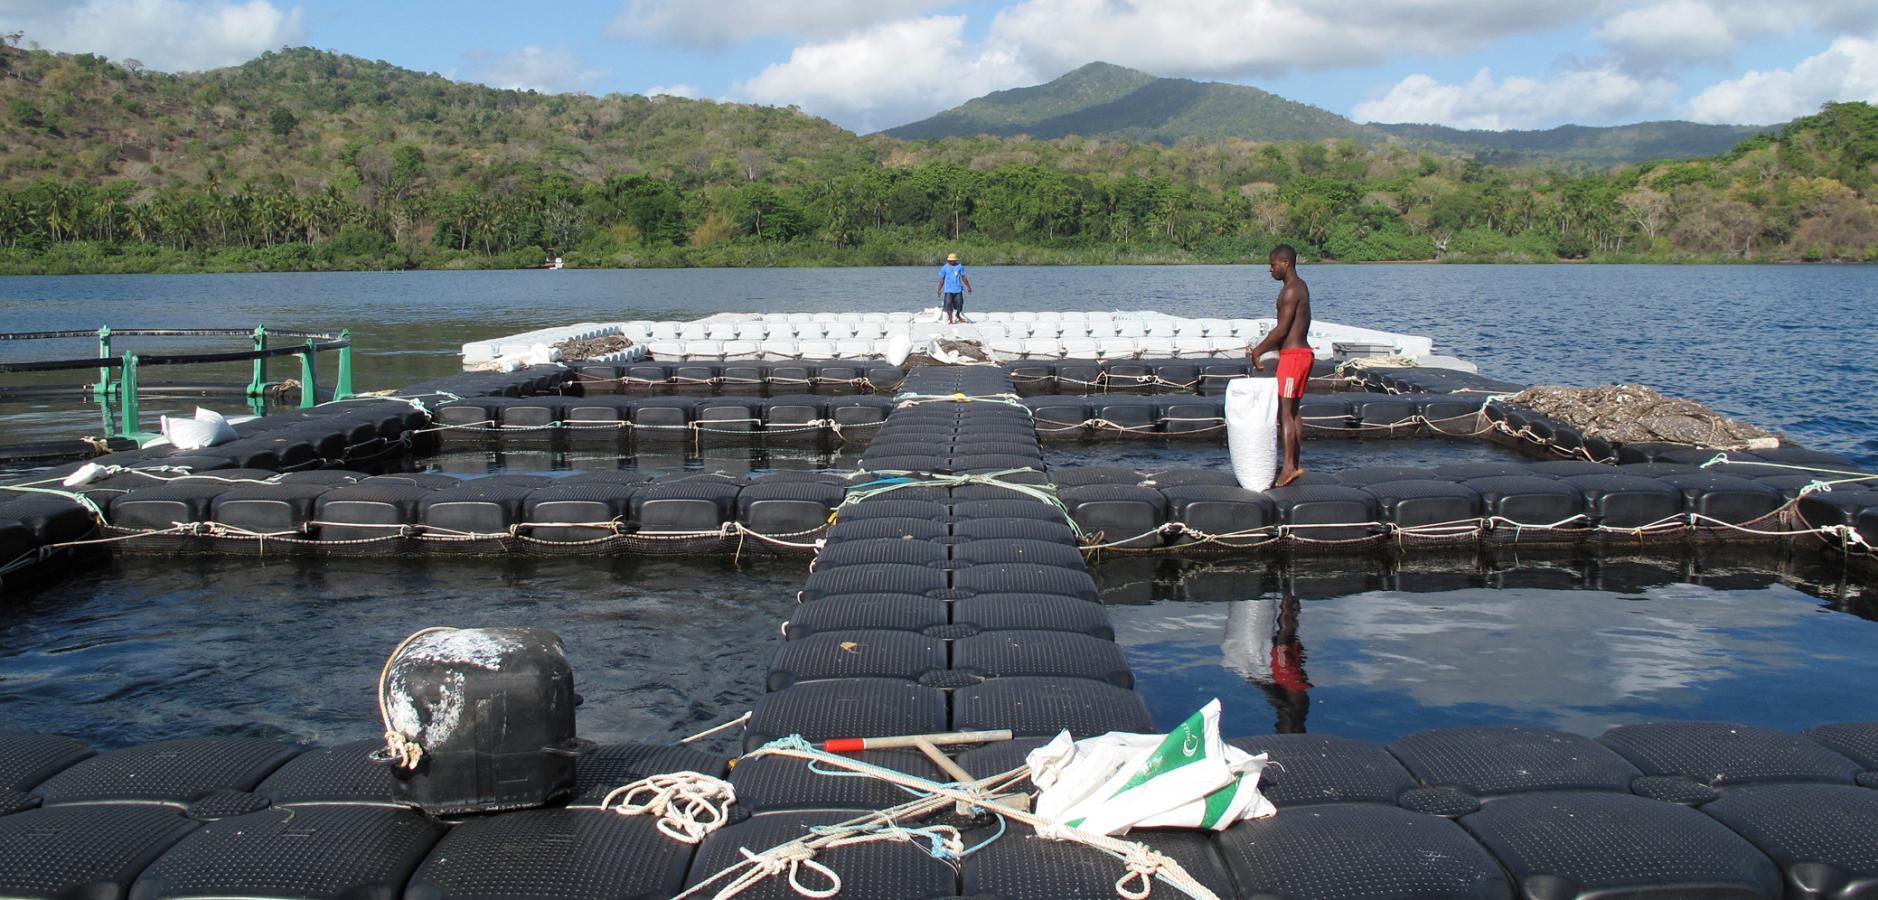 Ferme aquacole : piscines d'élevage installées au large des côtes dans le lagon, Mayotte